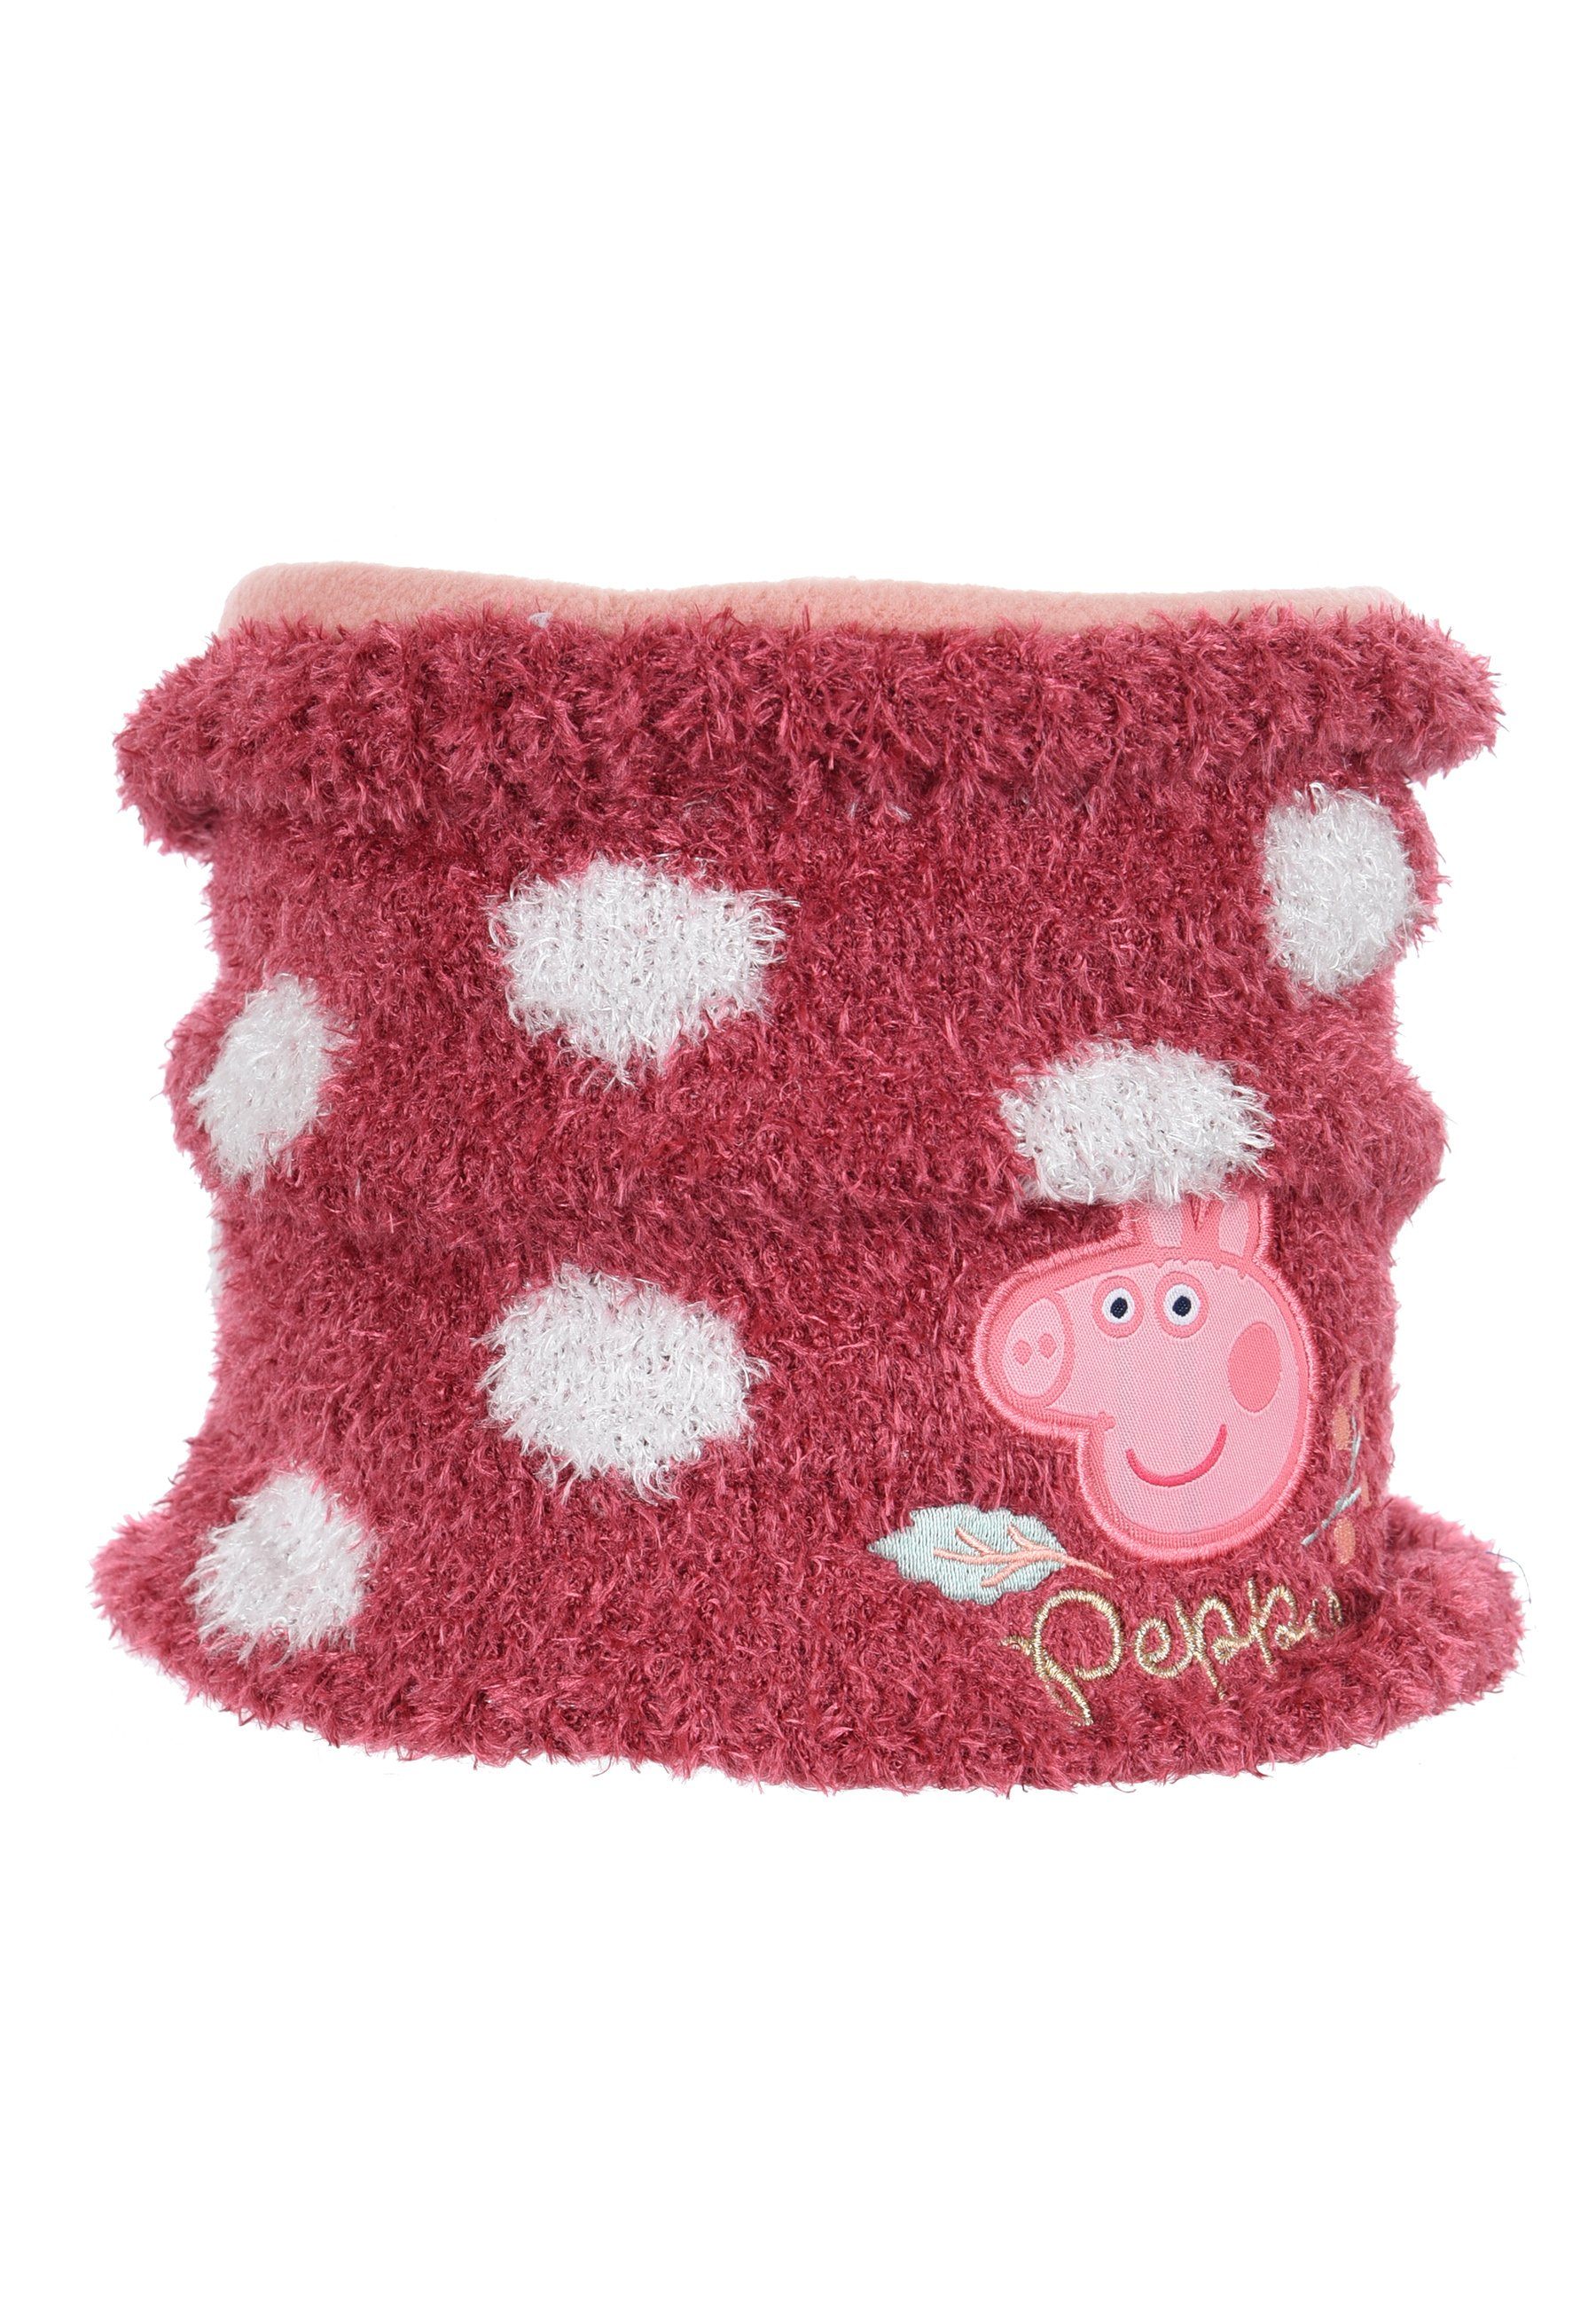 Peppa Pig Loop Kinder Mädchen Winter-Schal Schlauch-Schal Pink | Schals